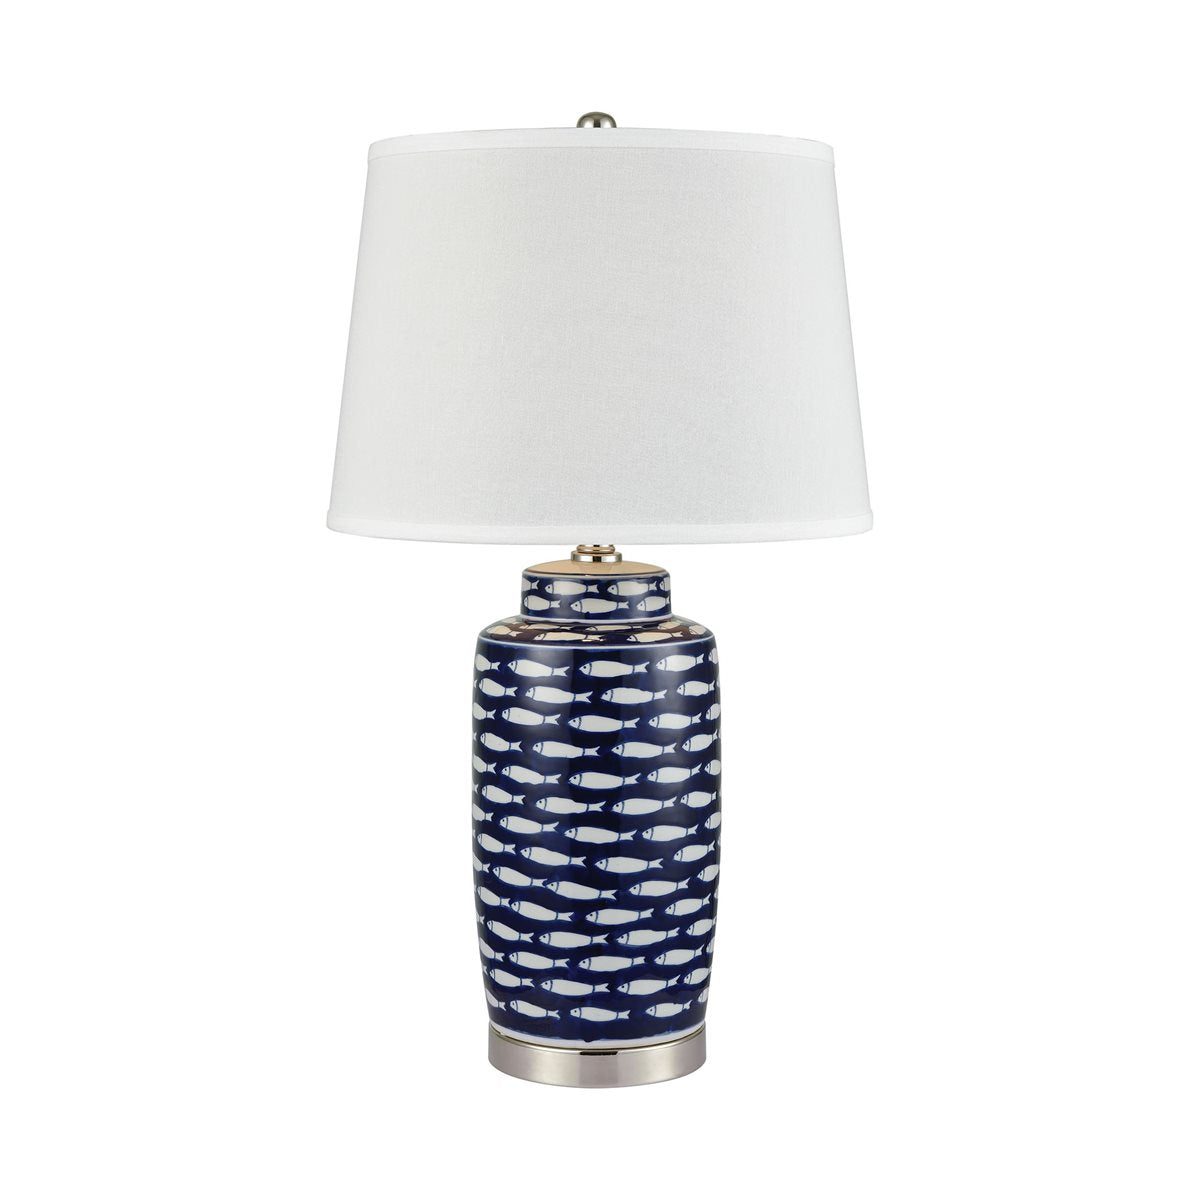 Stein World Azul Baru Table Lamp 77026